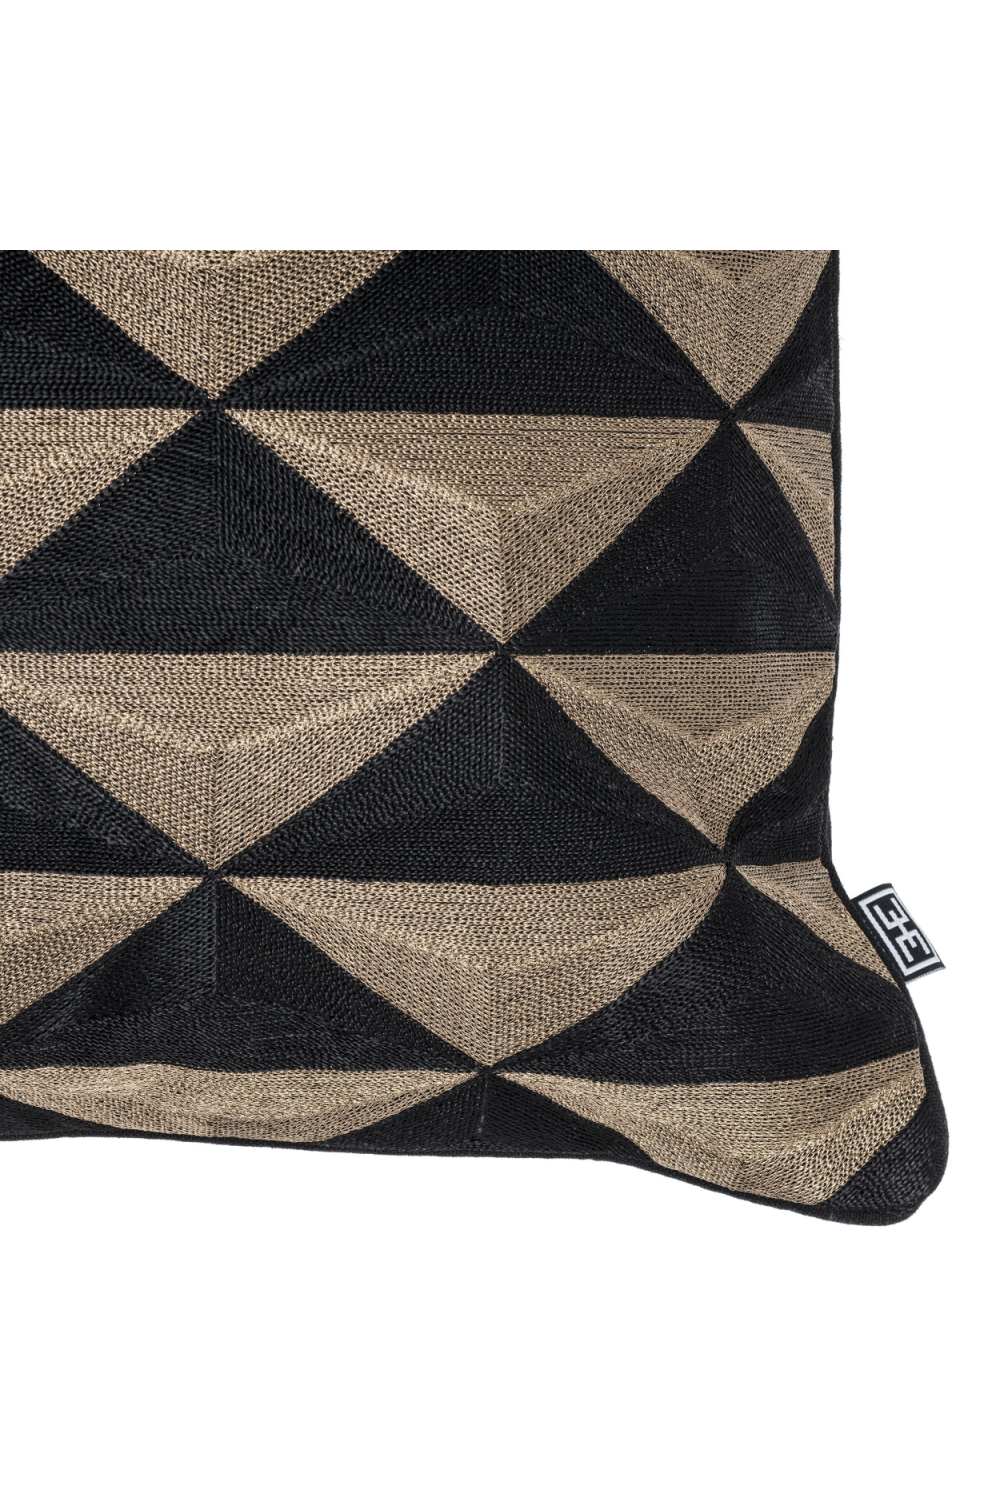 Decorative Pillow | Eichholtz Mist | OROA.com